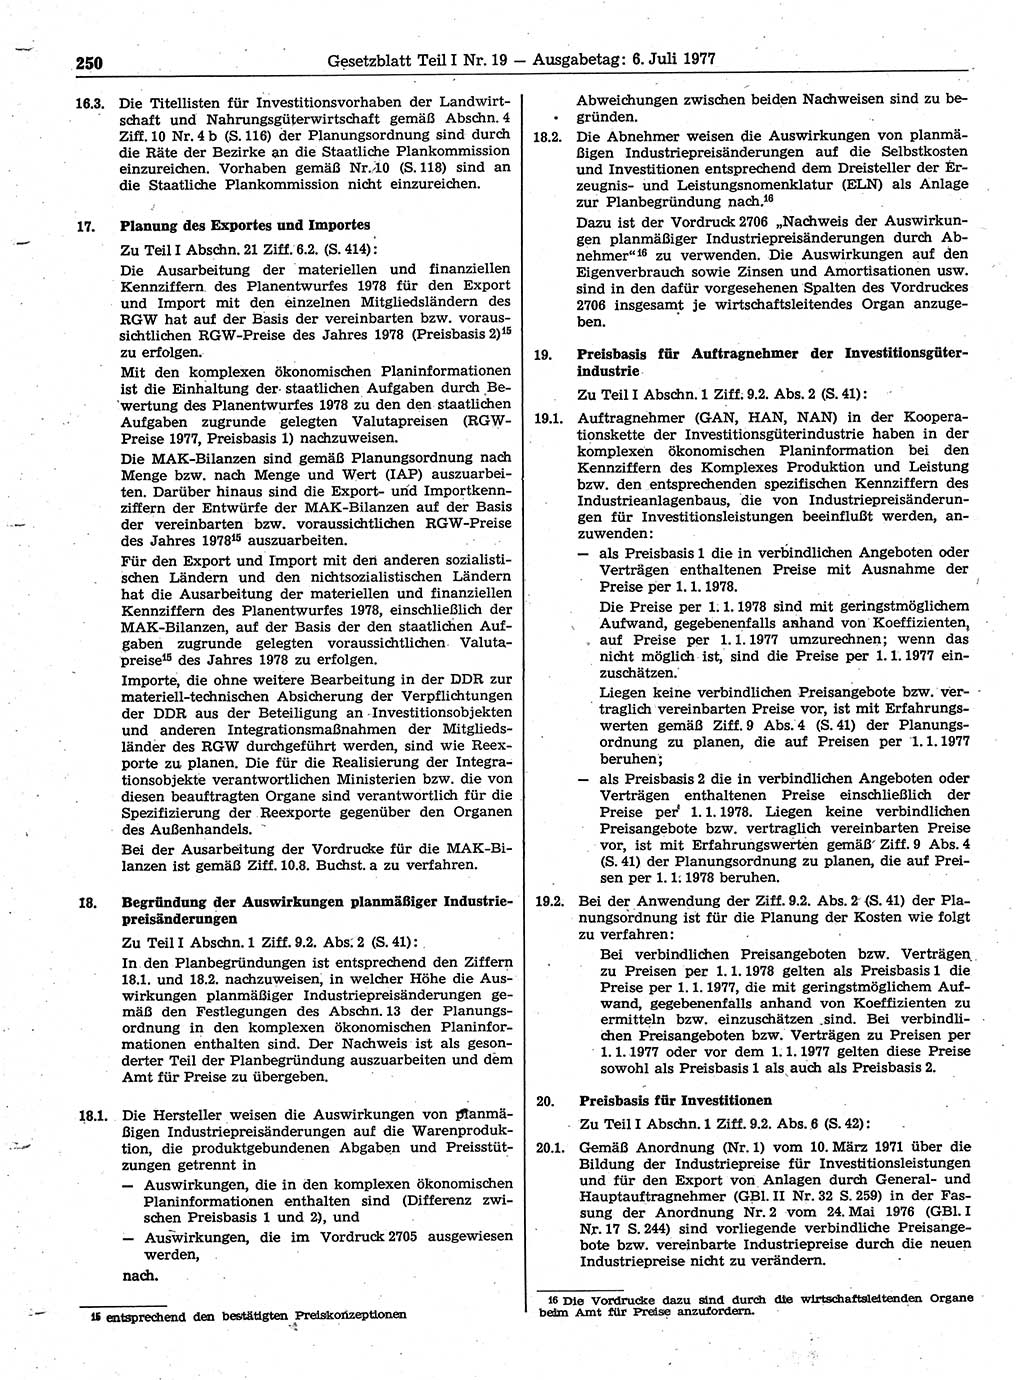 Gesetzblatt (GBl.) der Deutschen Demokratischen Republik (DDR) Teil Ⅰ 1977, Seite 250 (GBl. DDR Ⅰ 1977, S. 250)